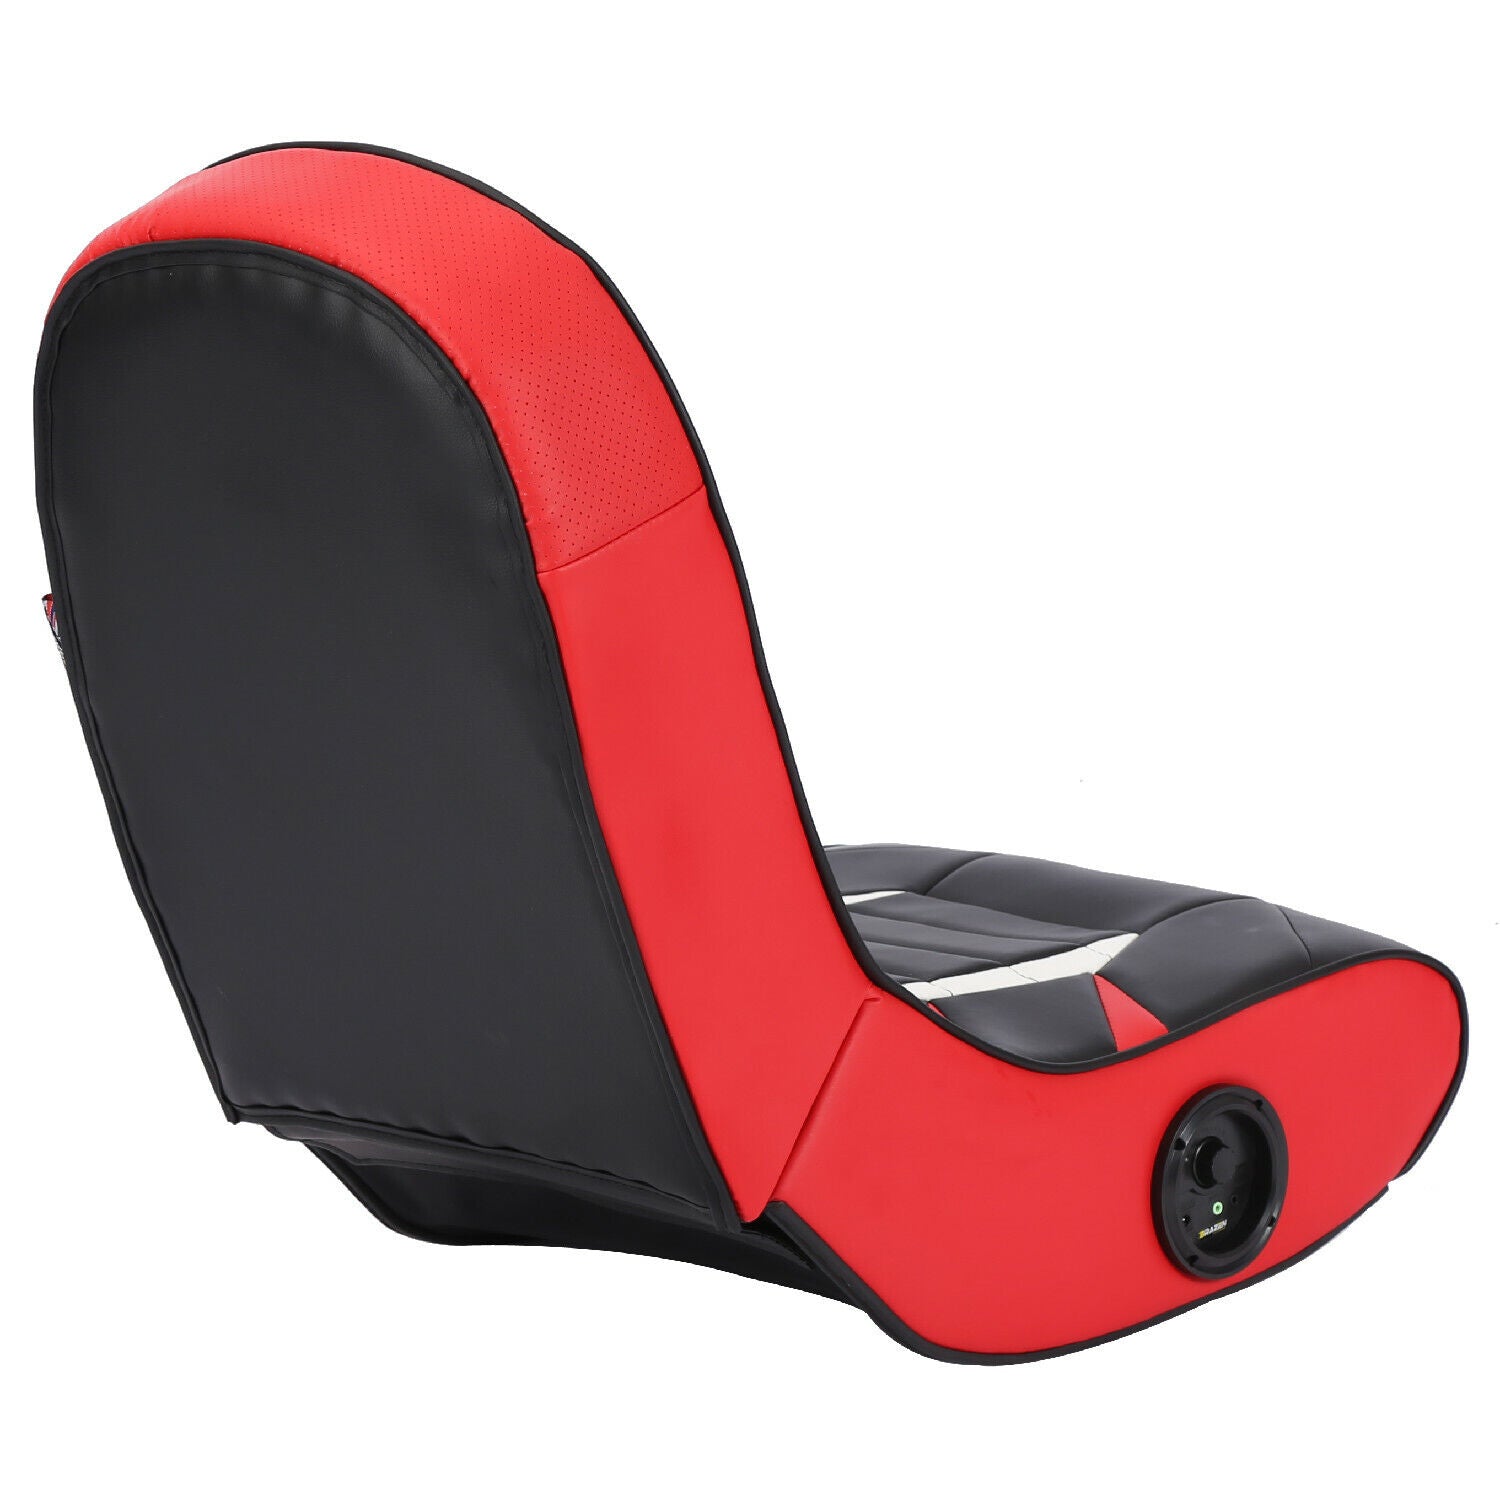 BraZen Python 2.0 Bluetooth Surround Sound Gaming Chair in Red/Black